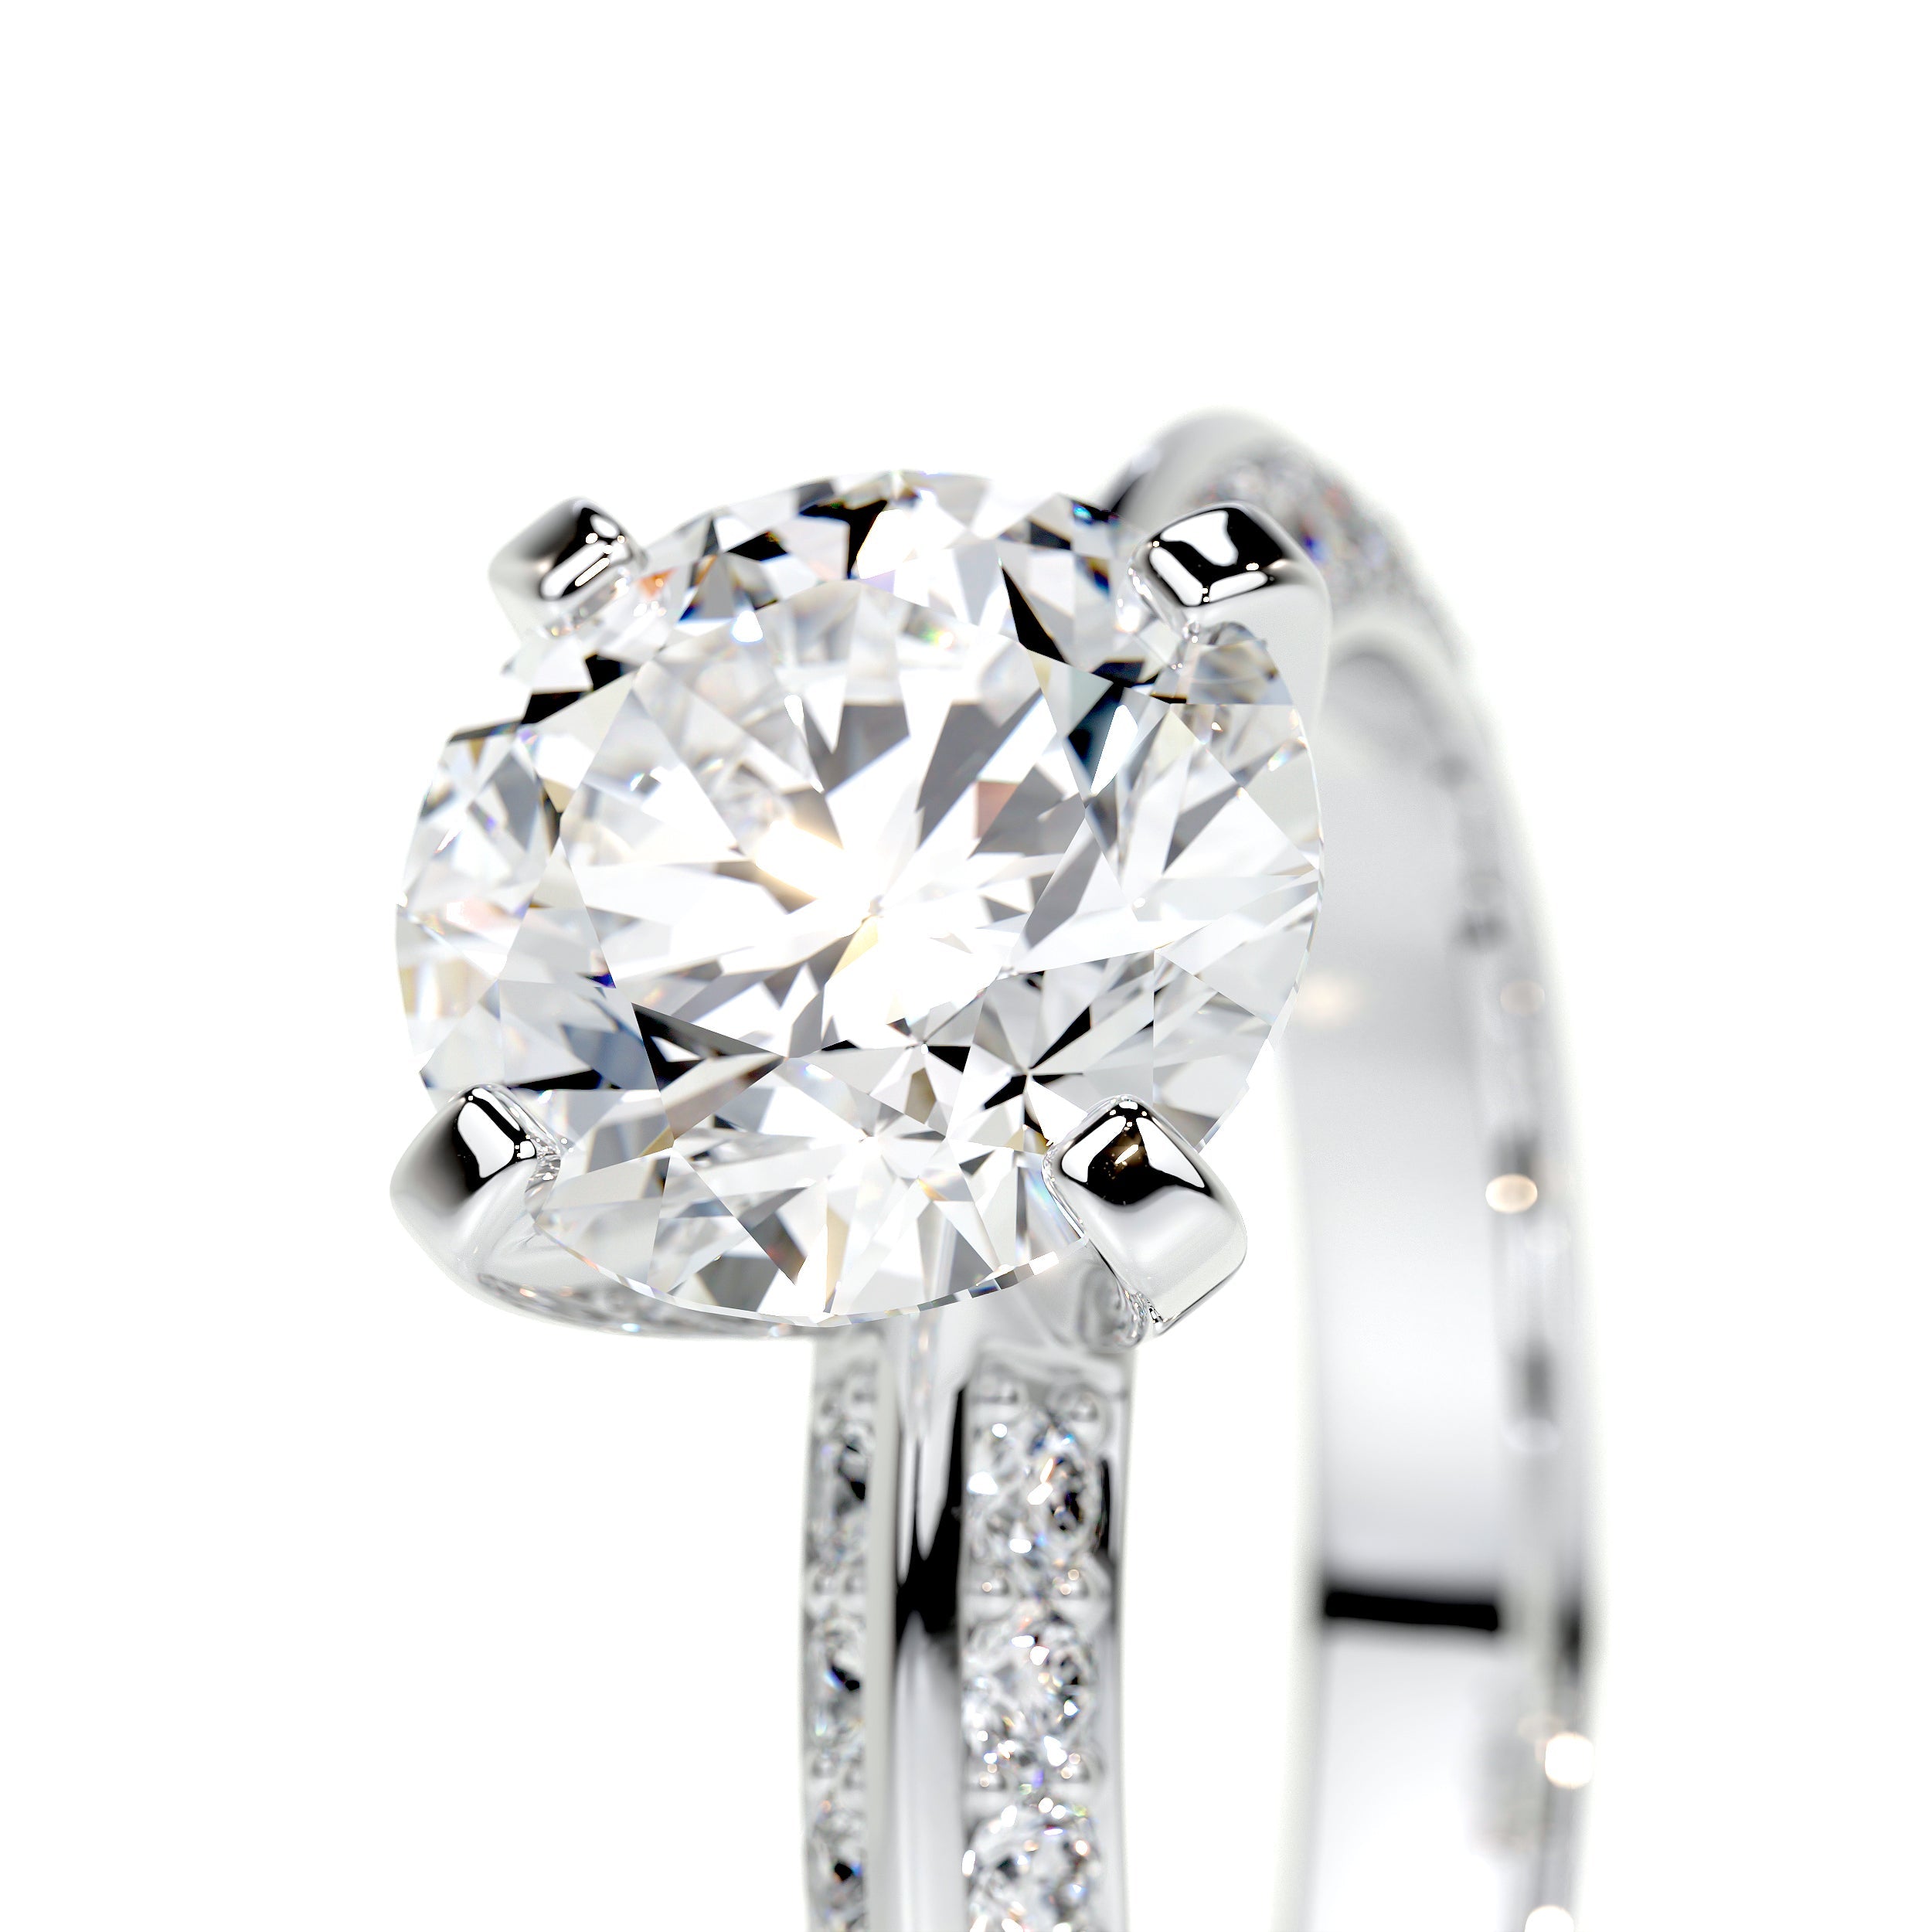 Ariana Lab Grown Diamond Ring   (2.3 Carat) -18K White Gold